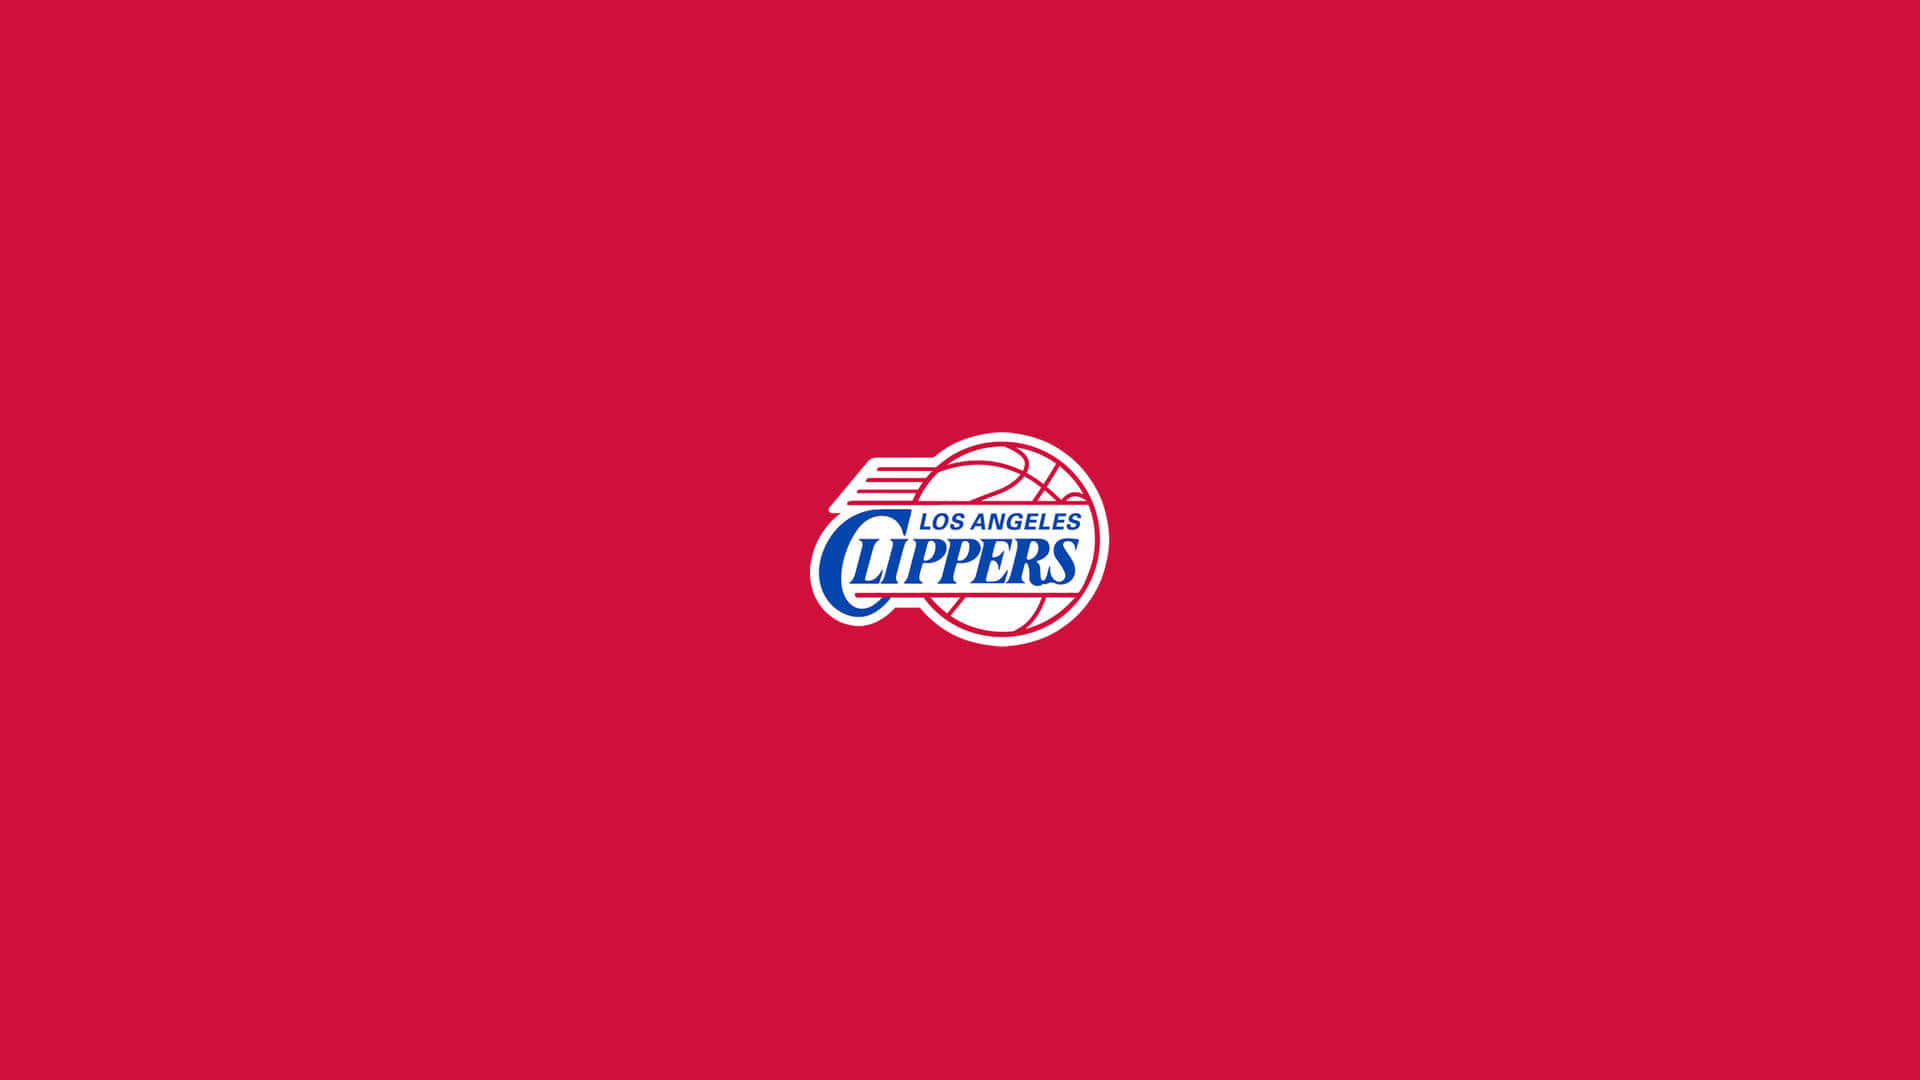 Logominimalista En Rojo Del Equipo De La Nba La Clippers Fondo de pantalla